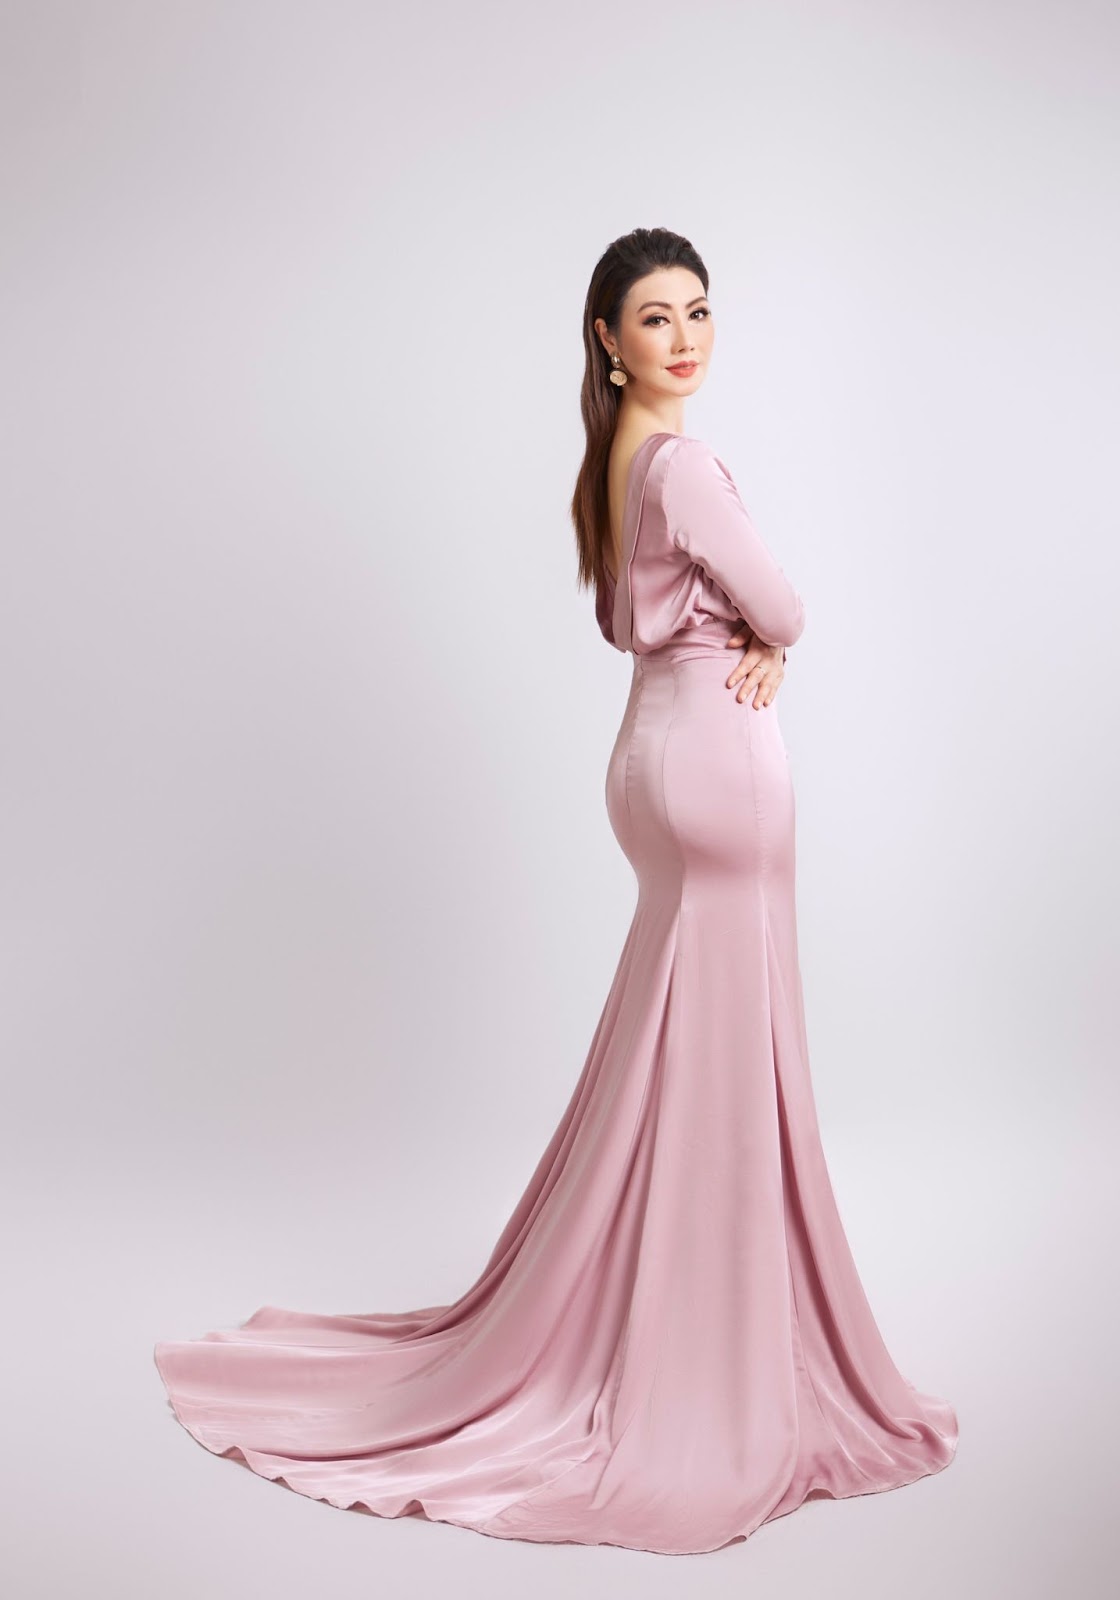 U50 dự thi Hoa hậu Doanh nhân Việt Nam gây bất ngờ với thân hình bốc lửa - Hình 2